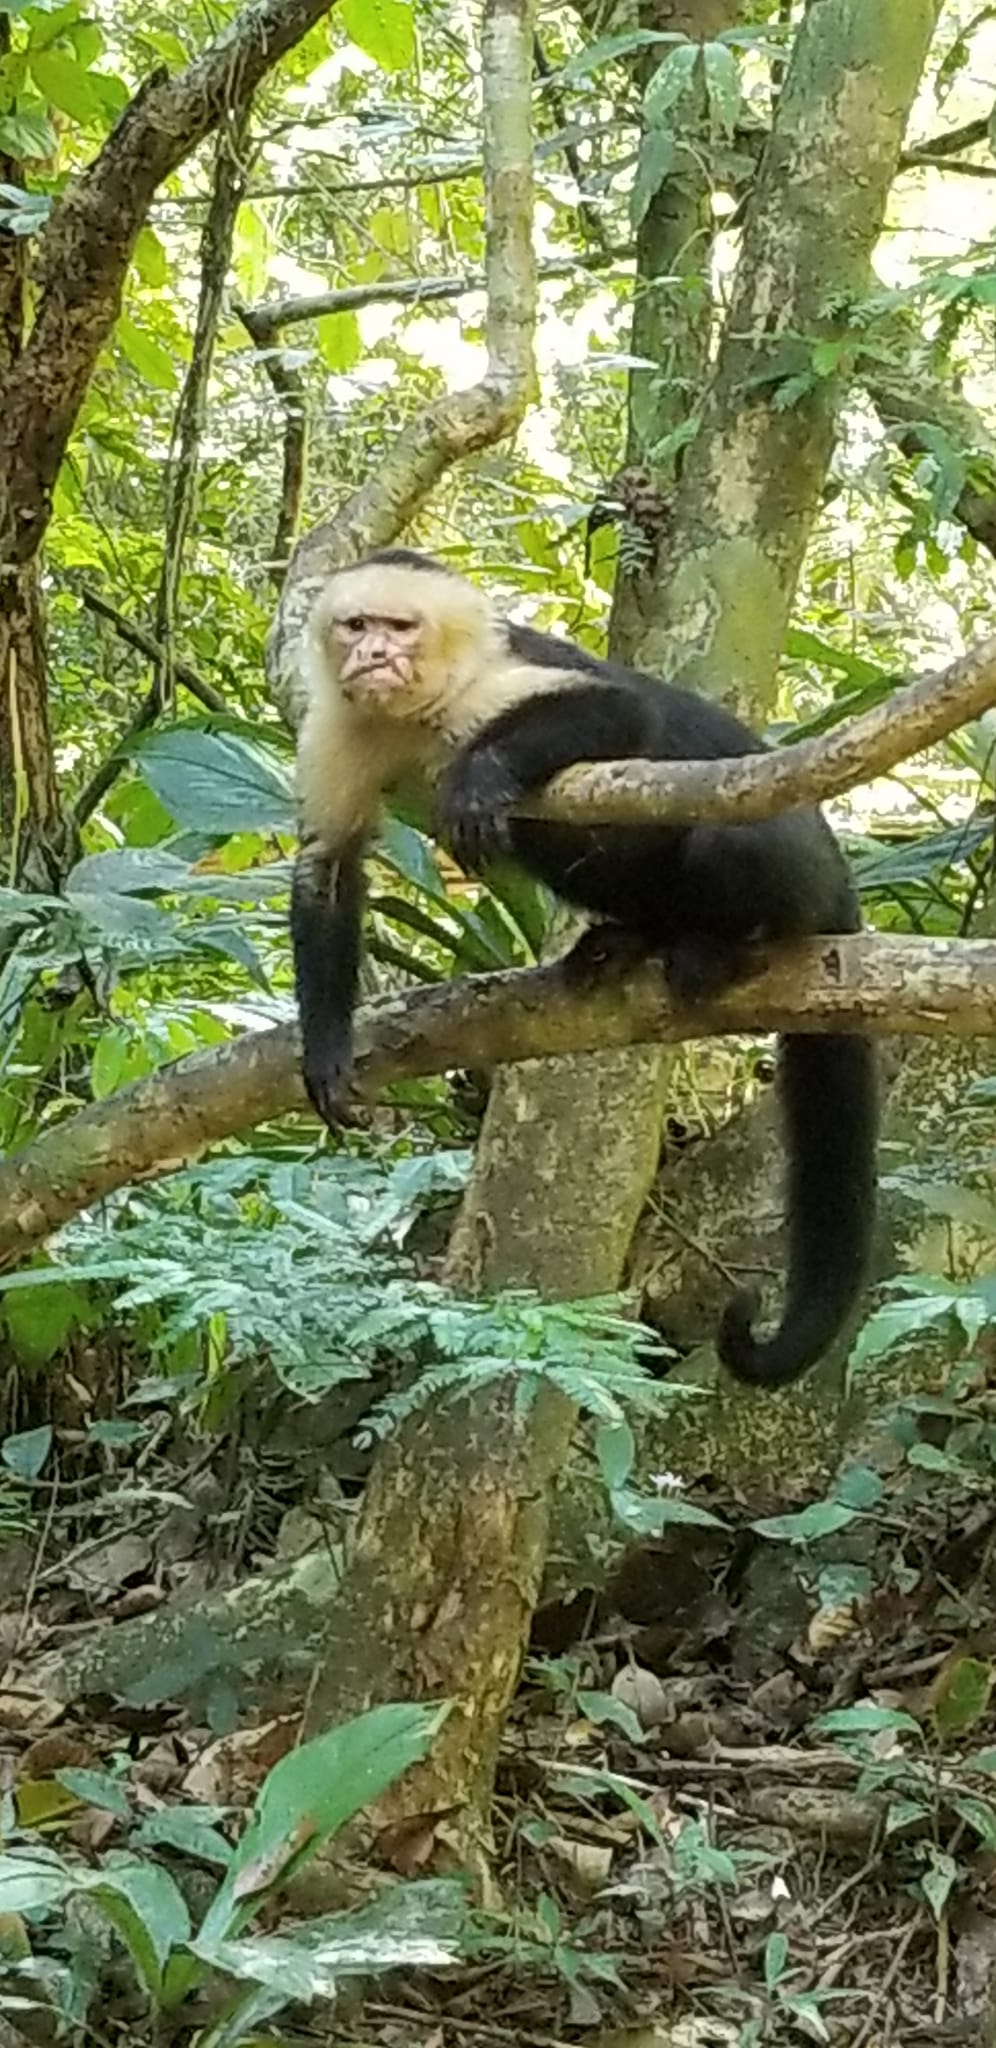 Monkey sitting in a tree